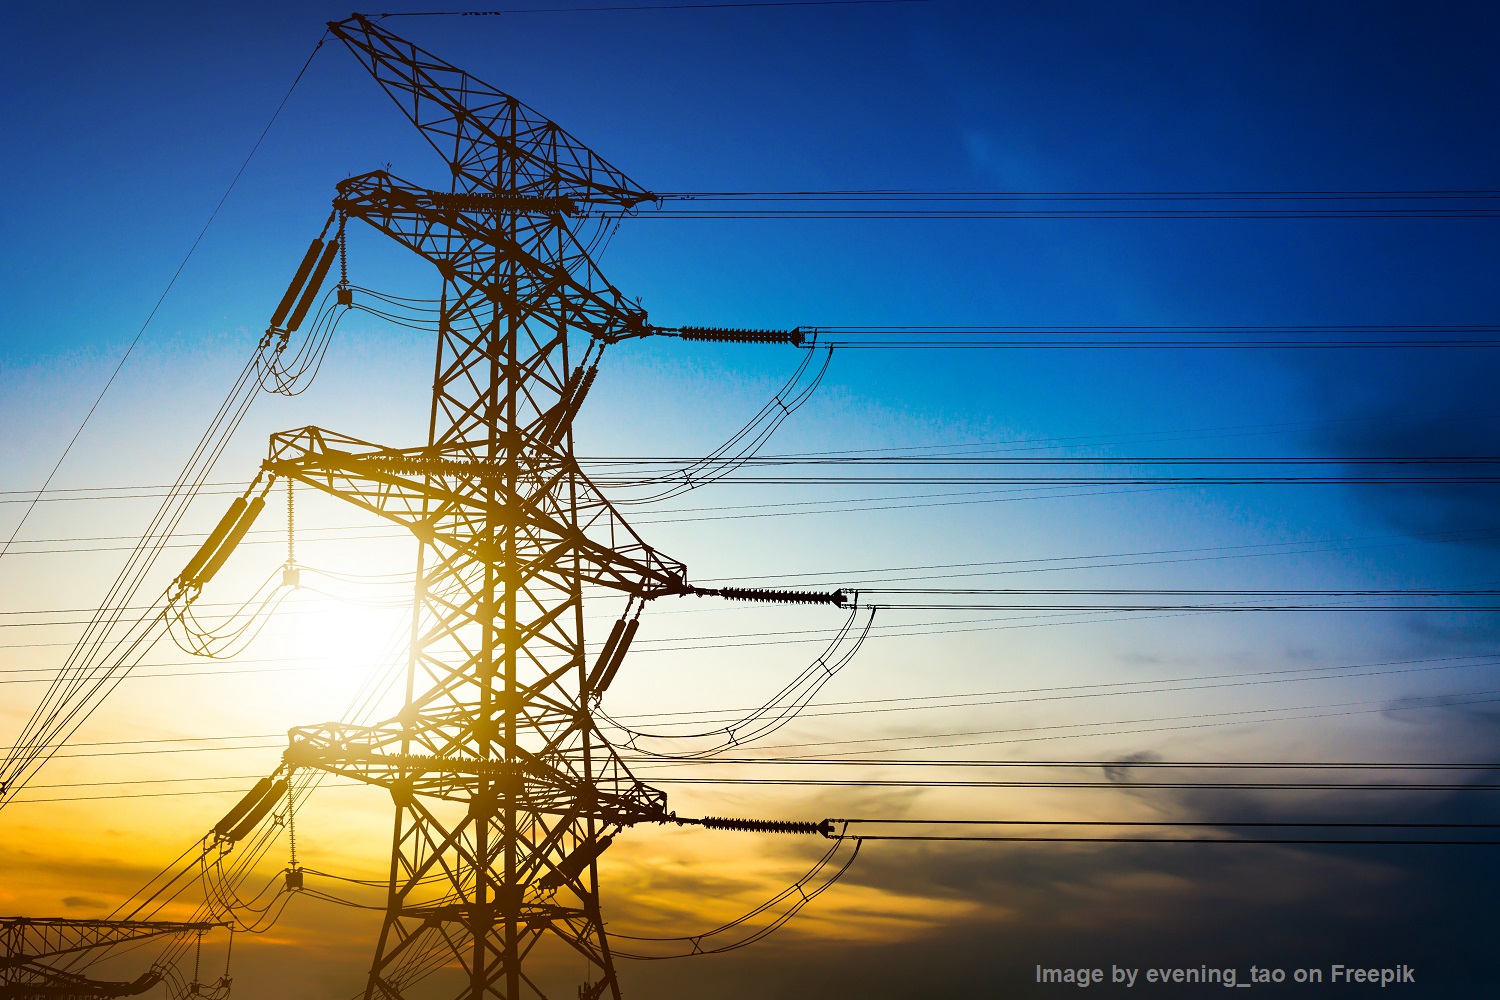 ส.อ.ท. เสนอแนวทางแก้ปัญหาค่าไฟฟ้า แนะรัฐคุมค่าไฟฟ้าปี 2567 ไม่เกินหน่วยละ 3.60 บาท 